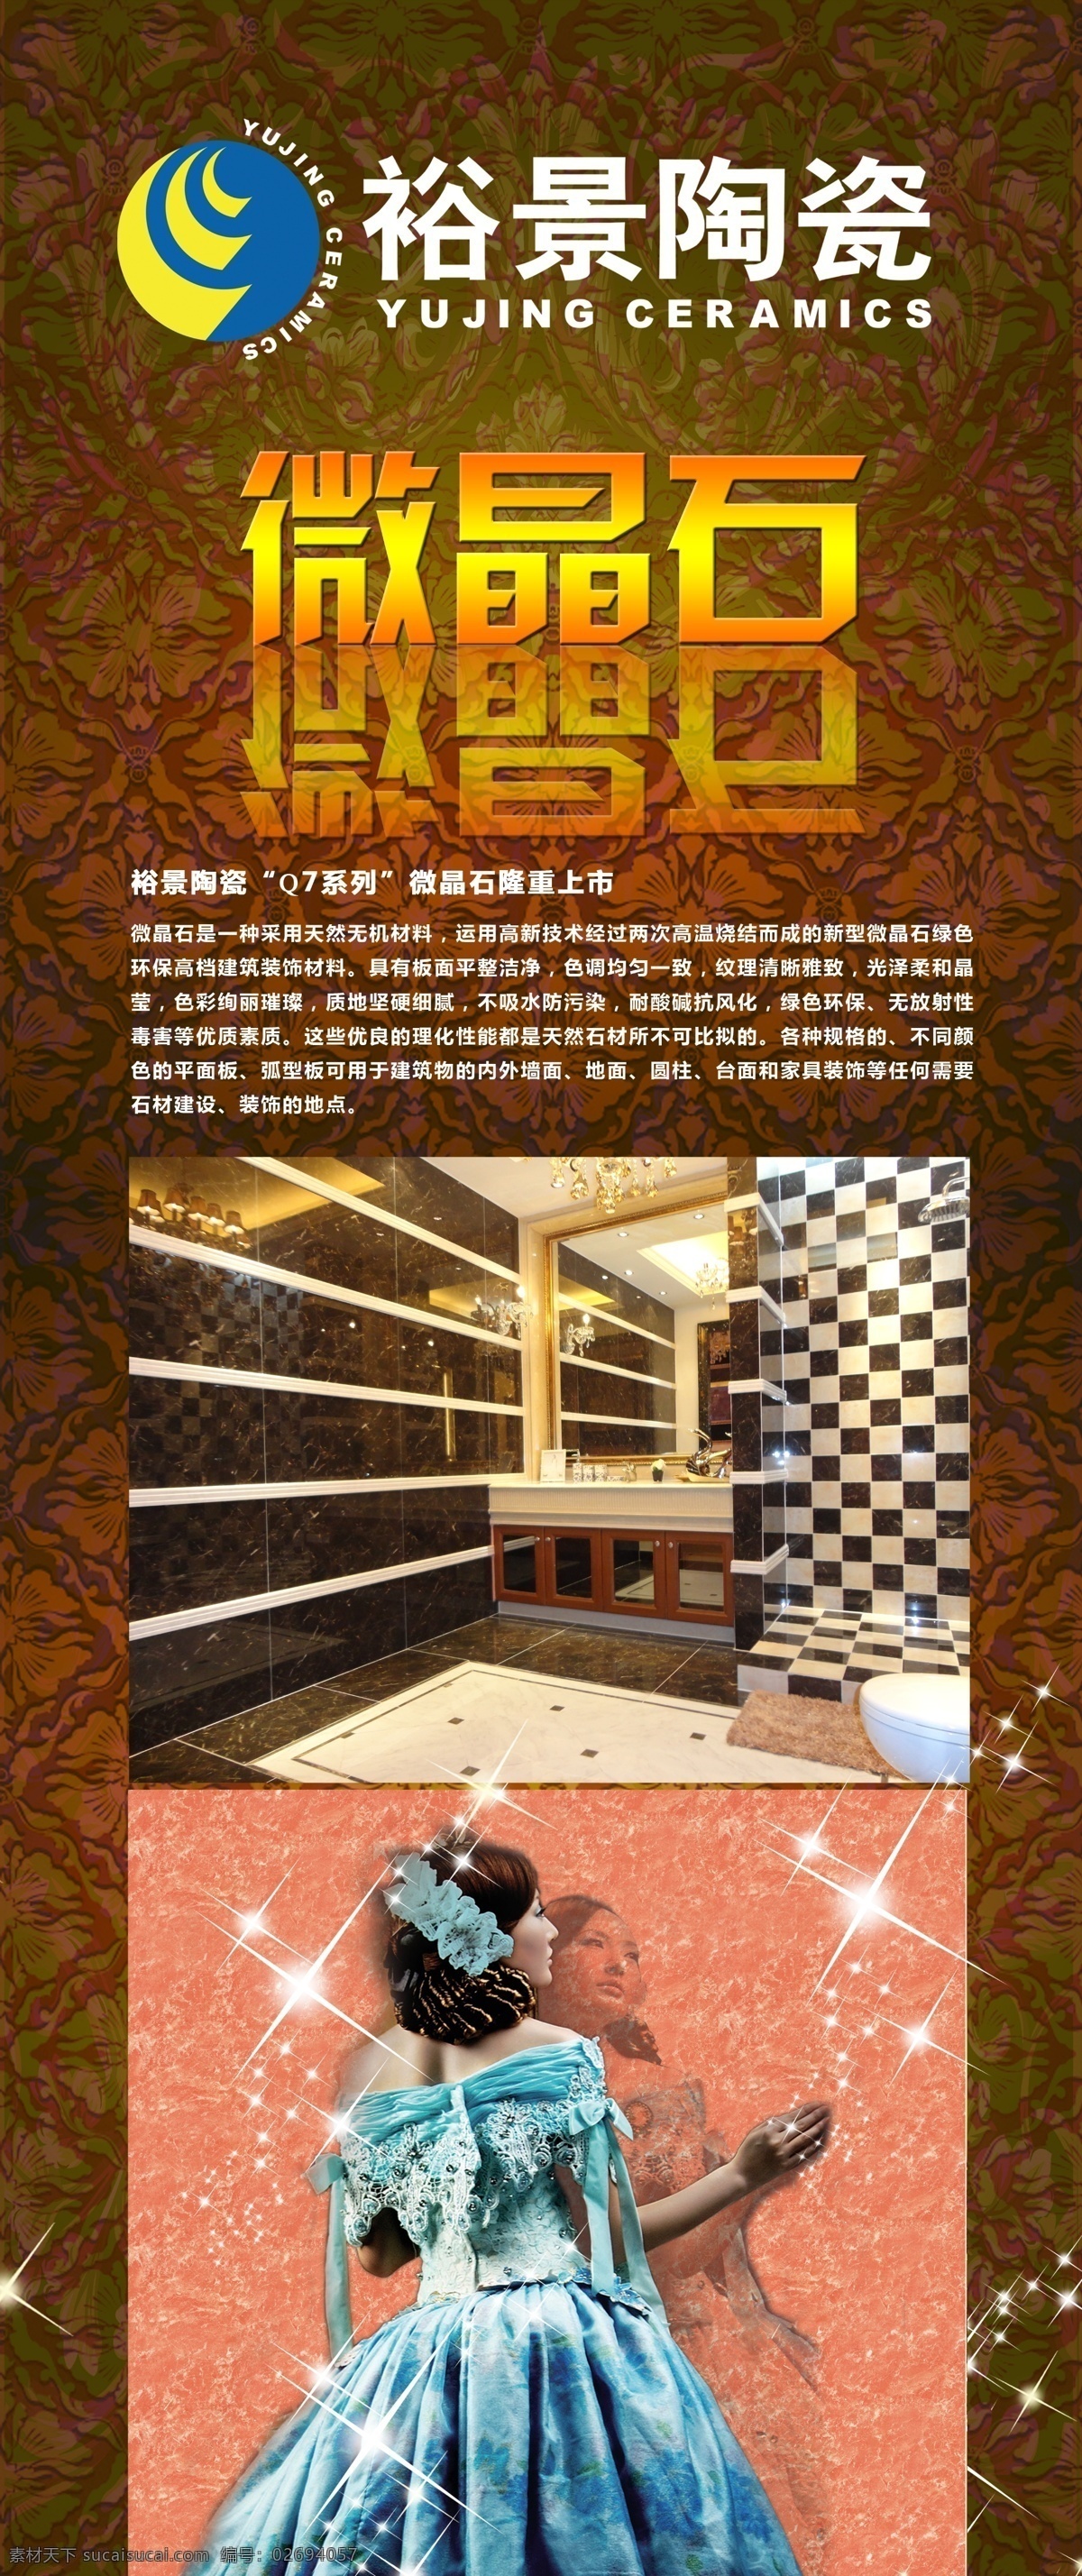 x 架 广告 陶瓷 微晶石 陈沛诺 原创设计 其他原创设计